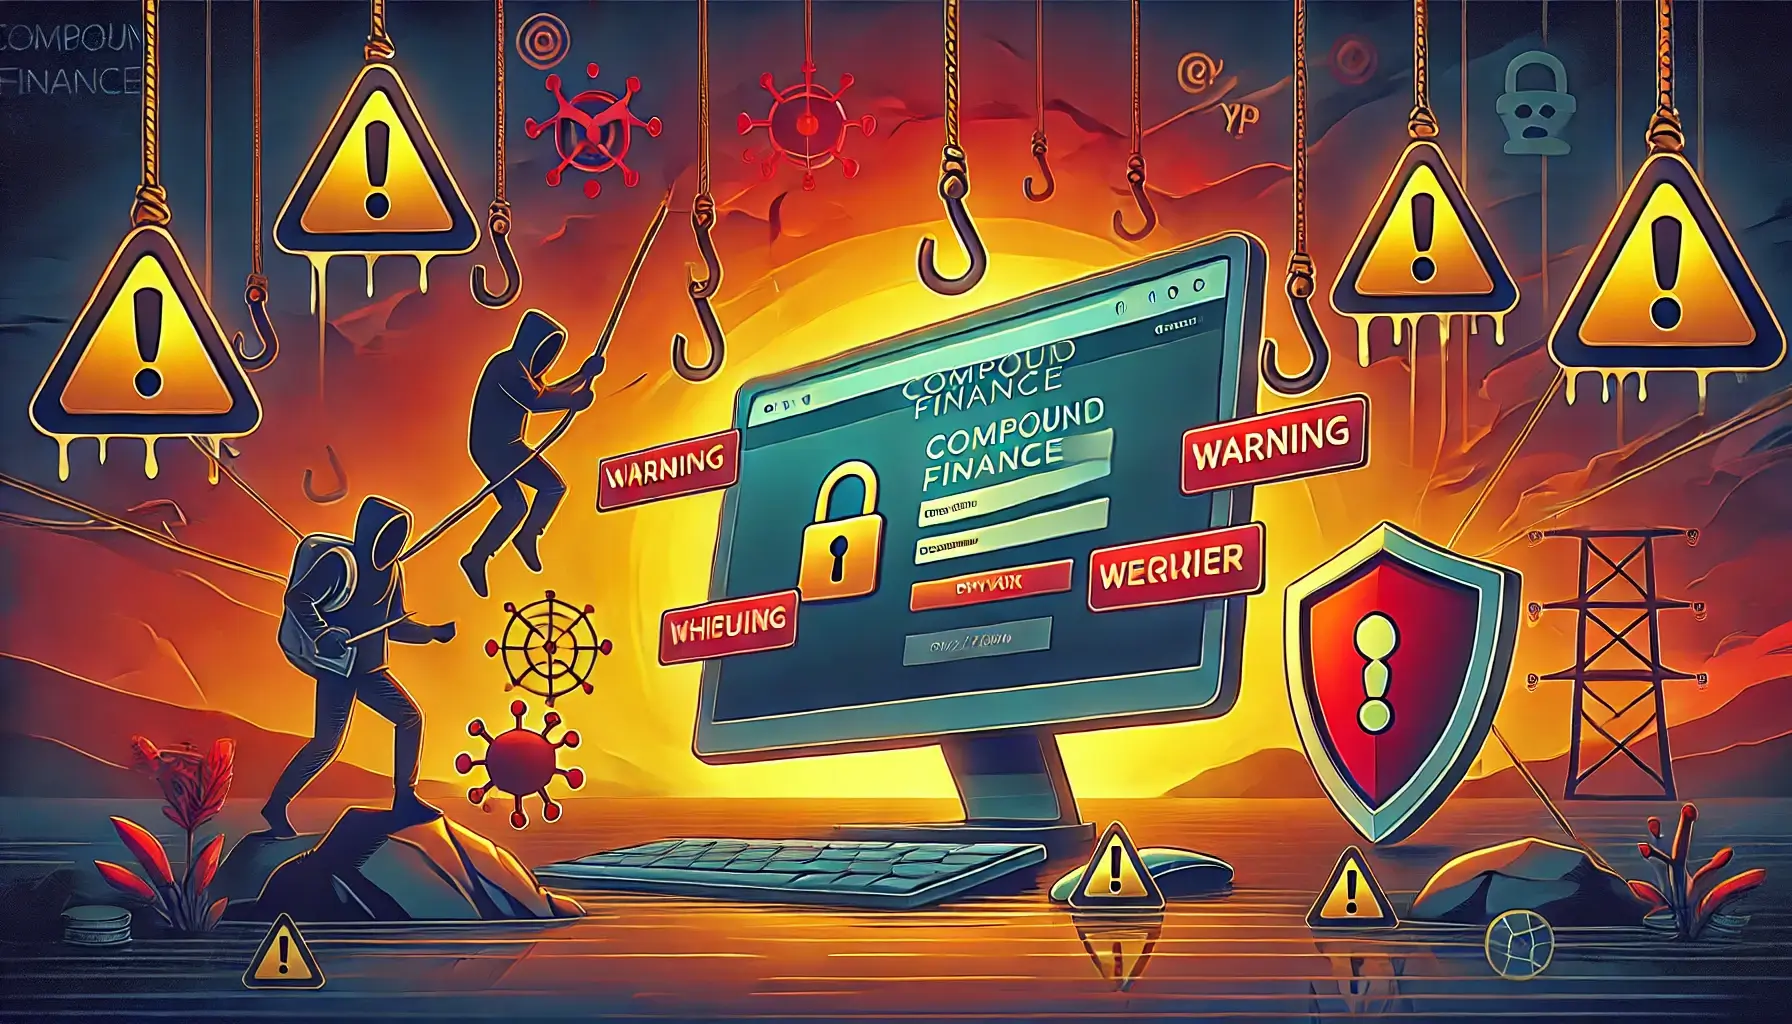 Compound Finance Website Under Threat of Phishing Attack, Warns Crypto Investigator ZachXBT